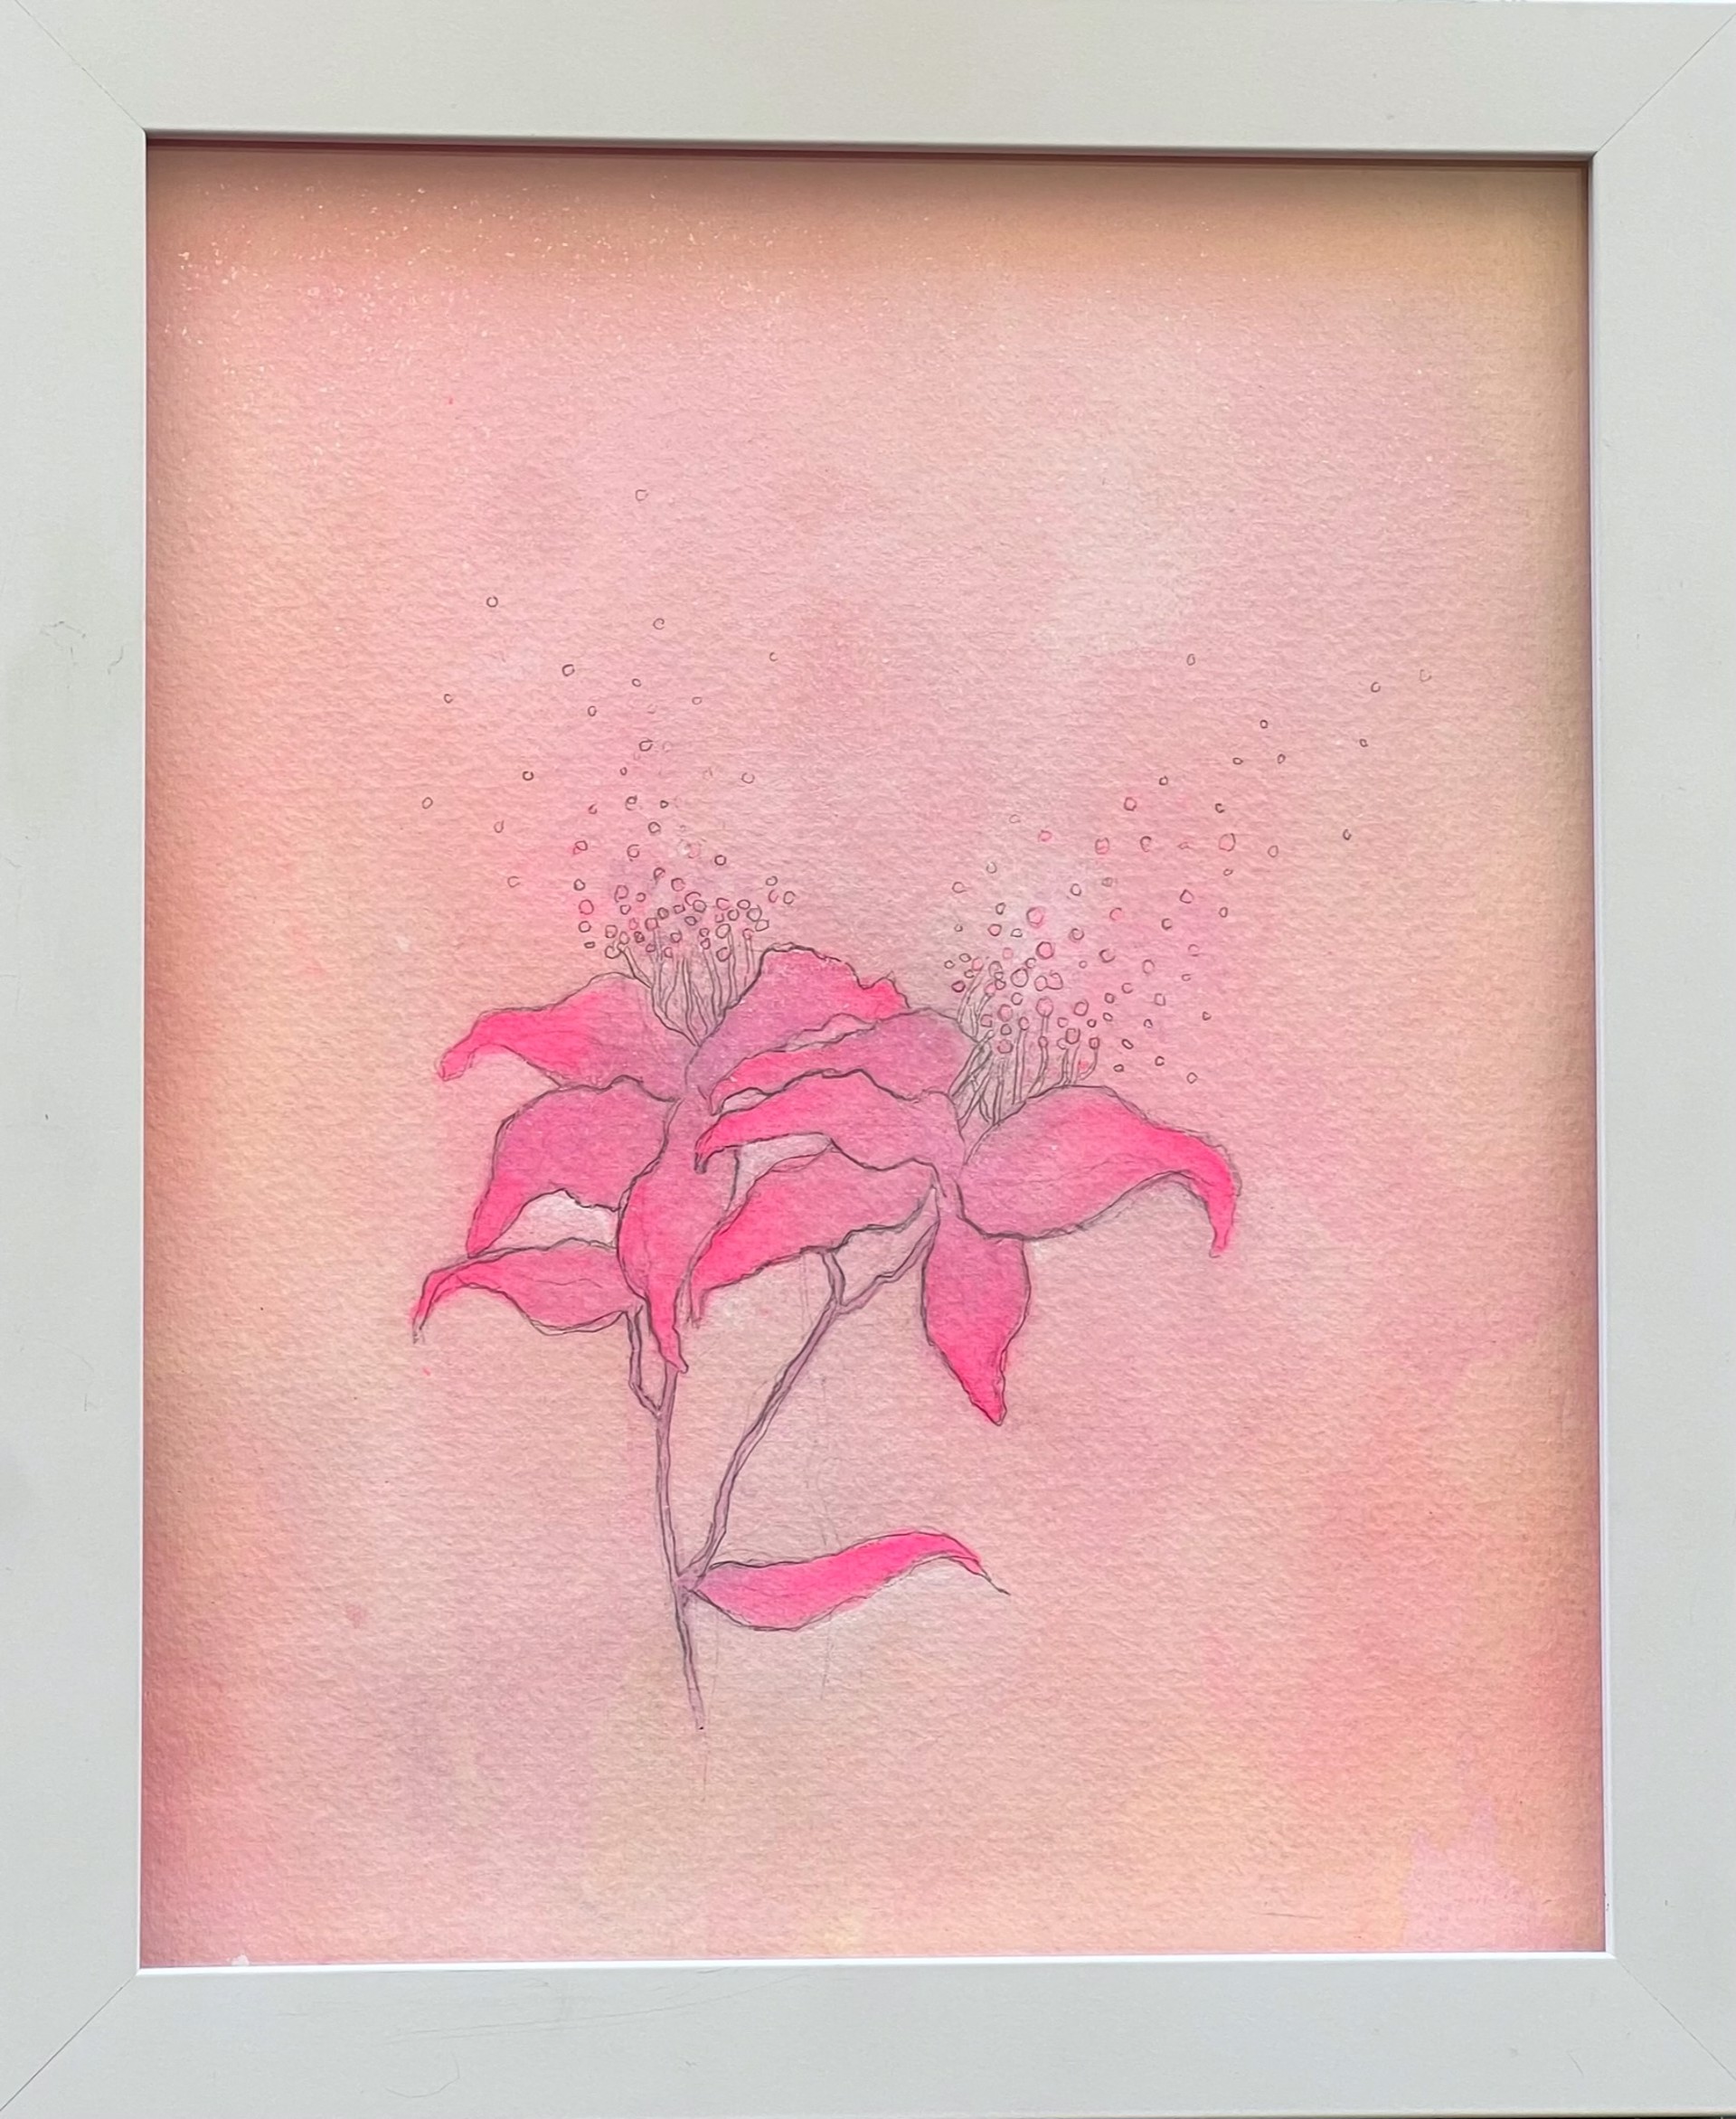 Hothouse Flower by Kristen Rae Simonsen